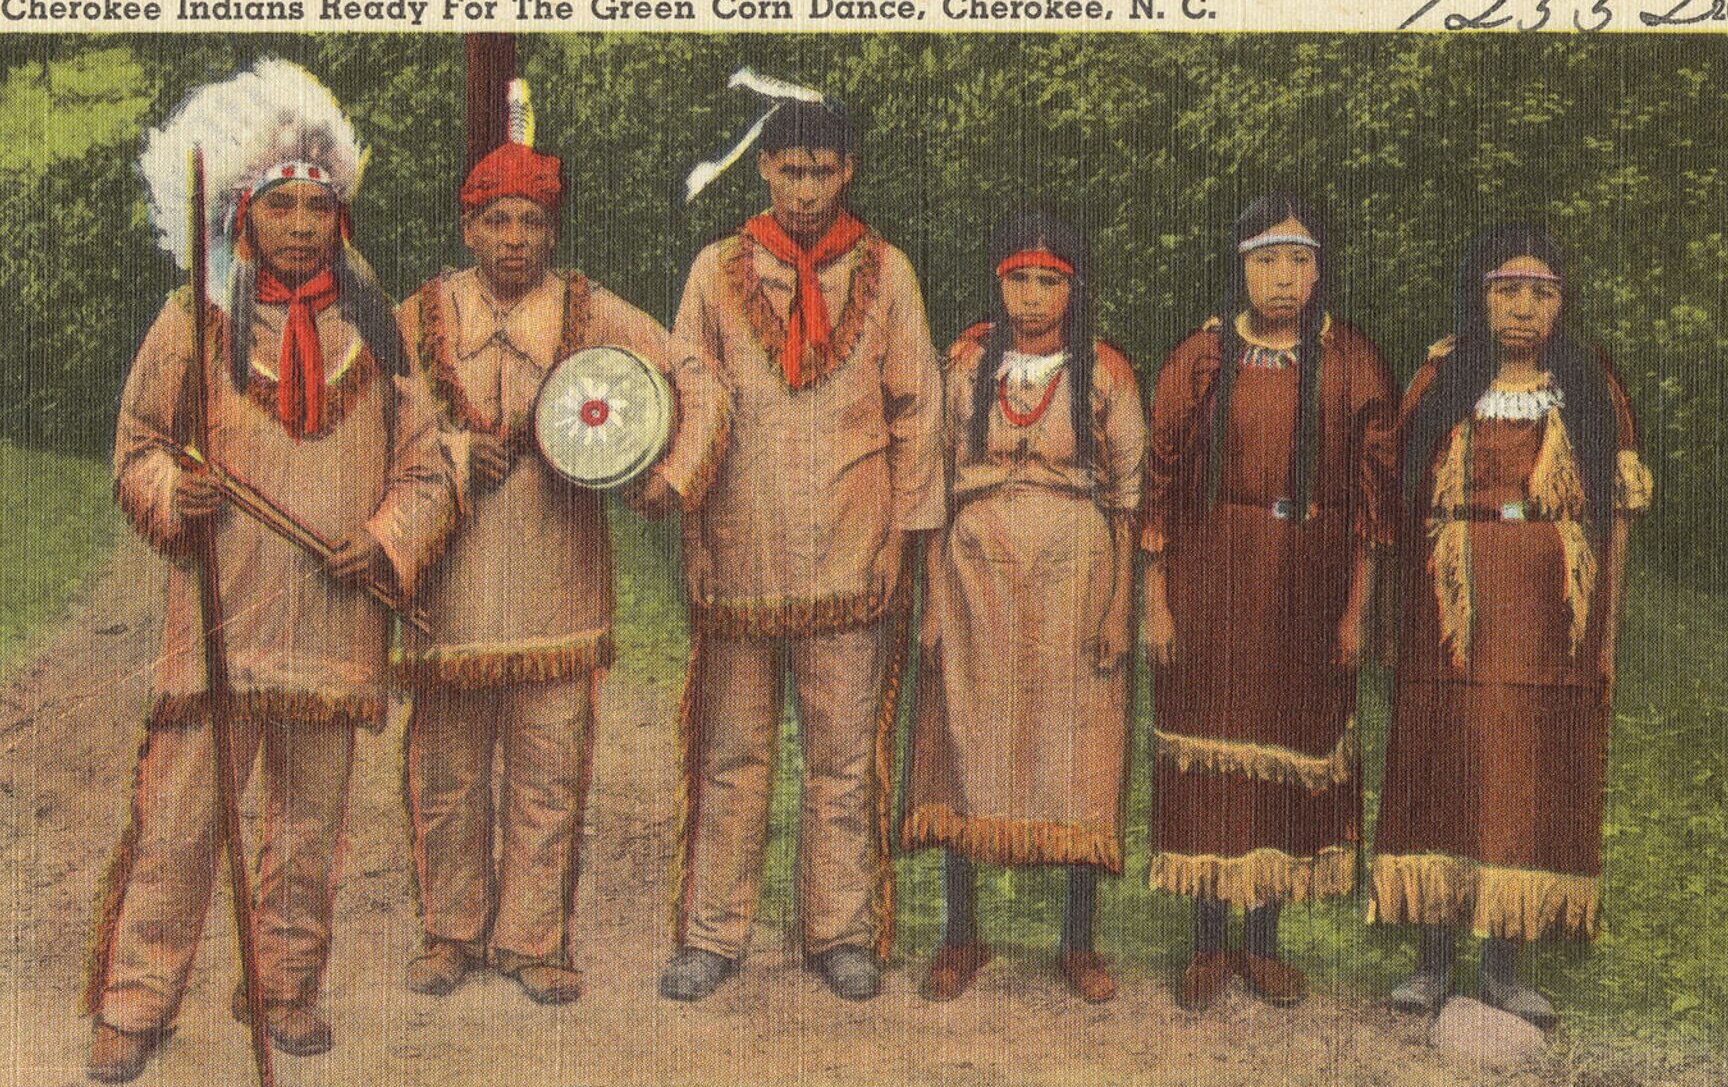 Los cherokees: historia y cultura del pueblo nativo americano.